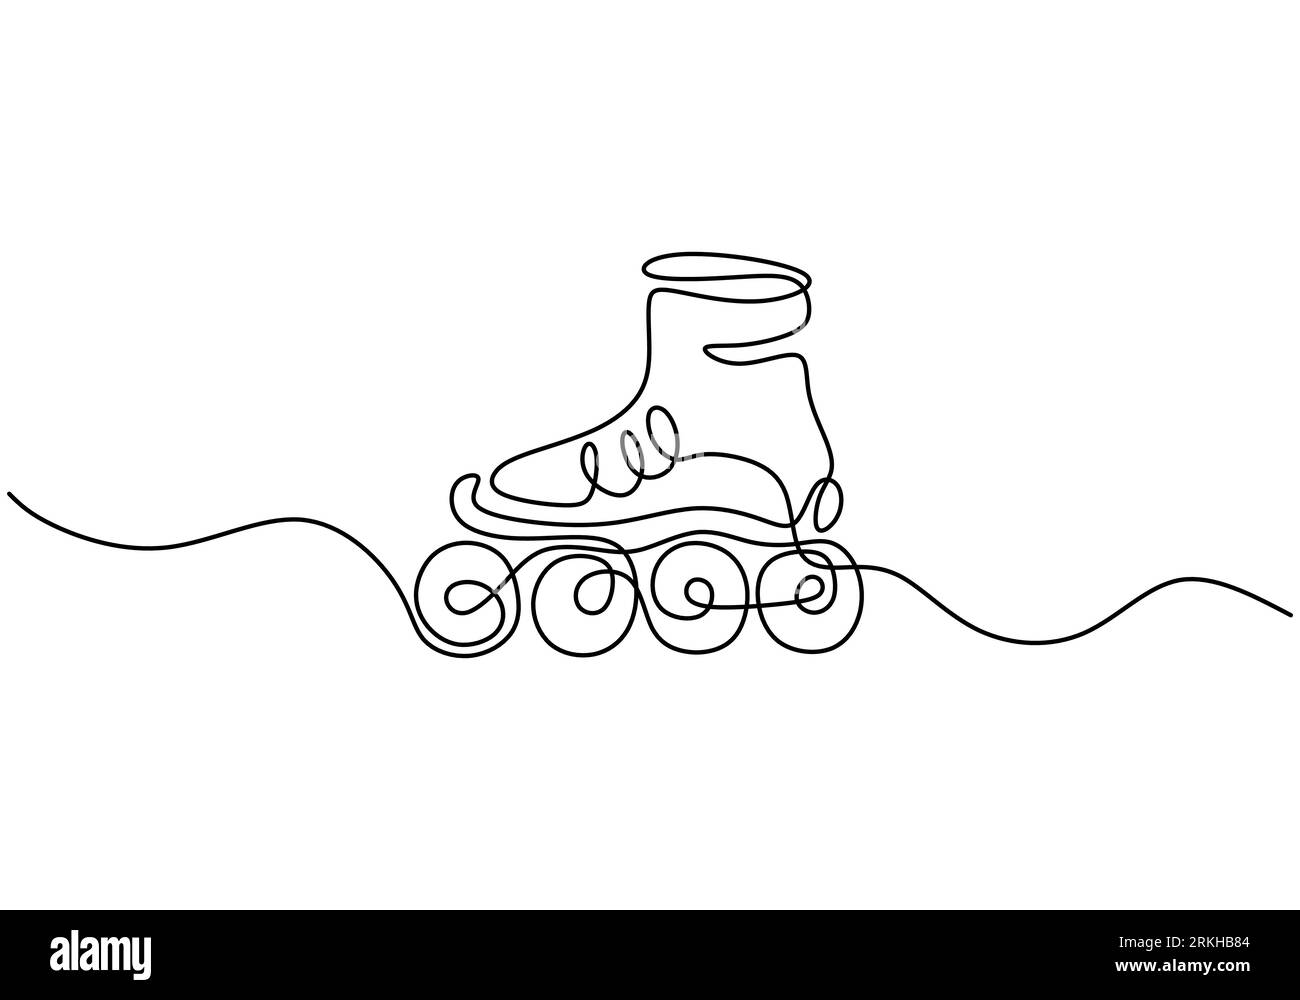 Un dessin au trait continu d'une paire de vieilles chaussures de patin à roulettes quad en plastique rétro. Concept de sport de fitness sain. Chaussure de patin à roues alignées classique vintage Illustration de Vecteur